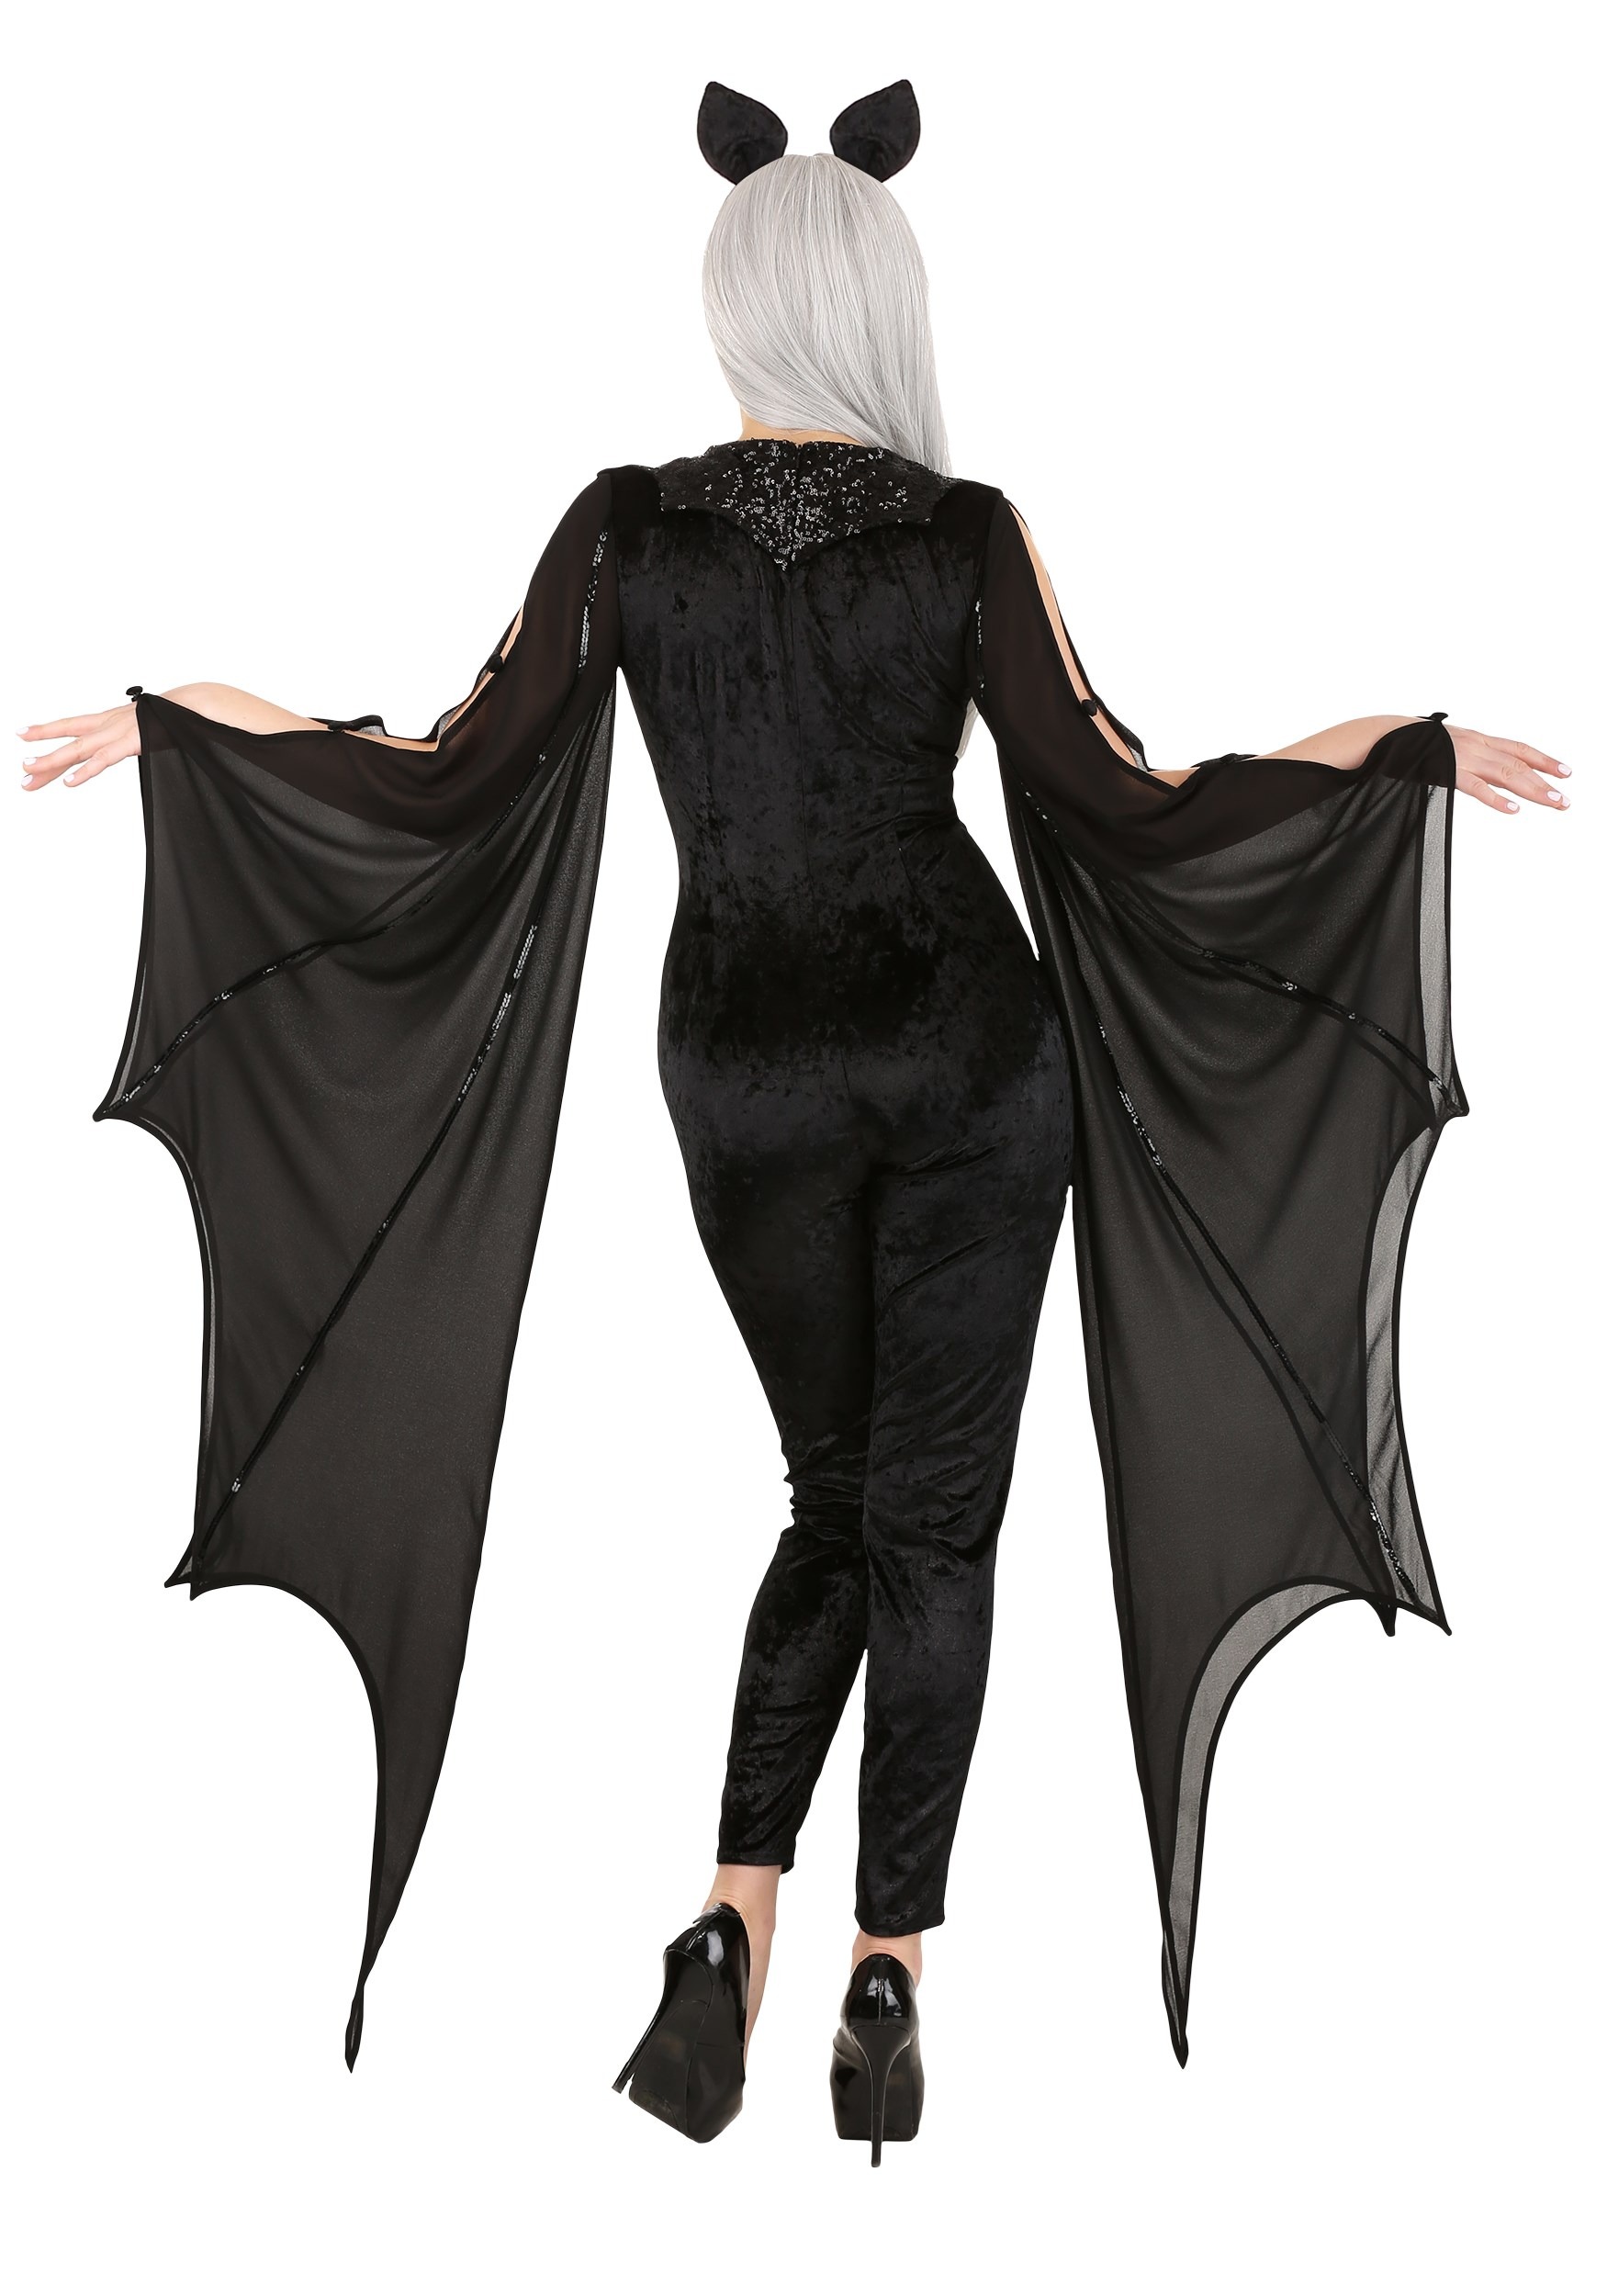 Midnight Bat Women's Fancy Dress Costume